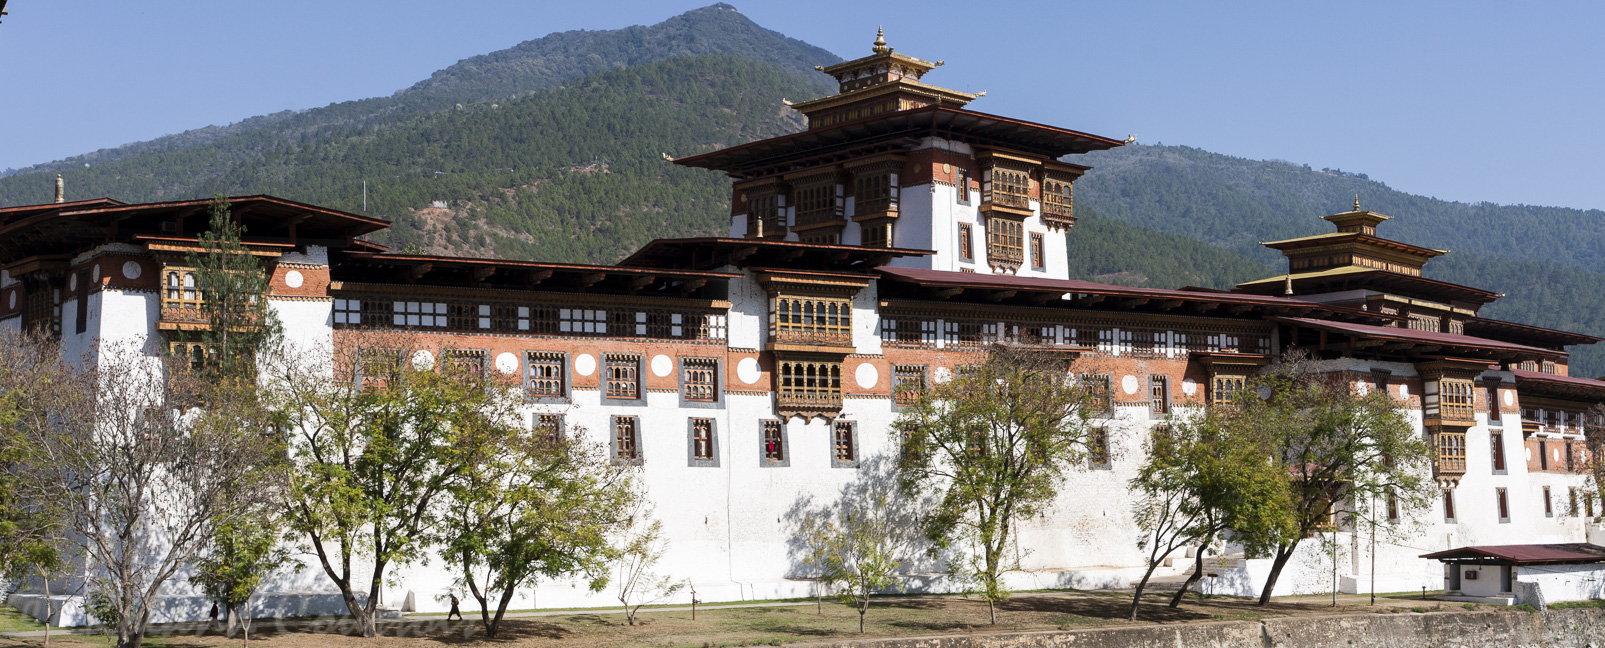 Dzong de Punakha. Ce Dzong fut construit par le Shabdrung, l’unificateur du Bhoutan en 1637.